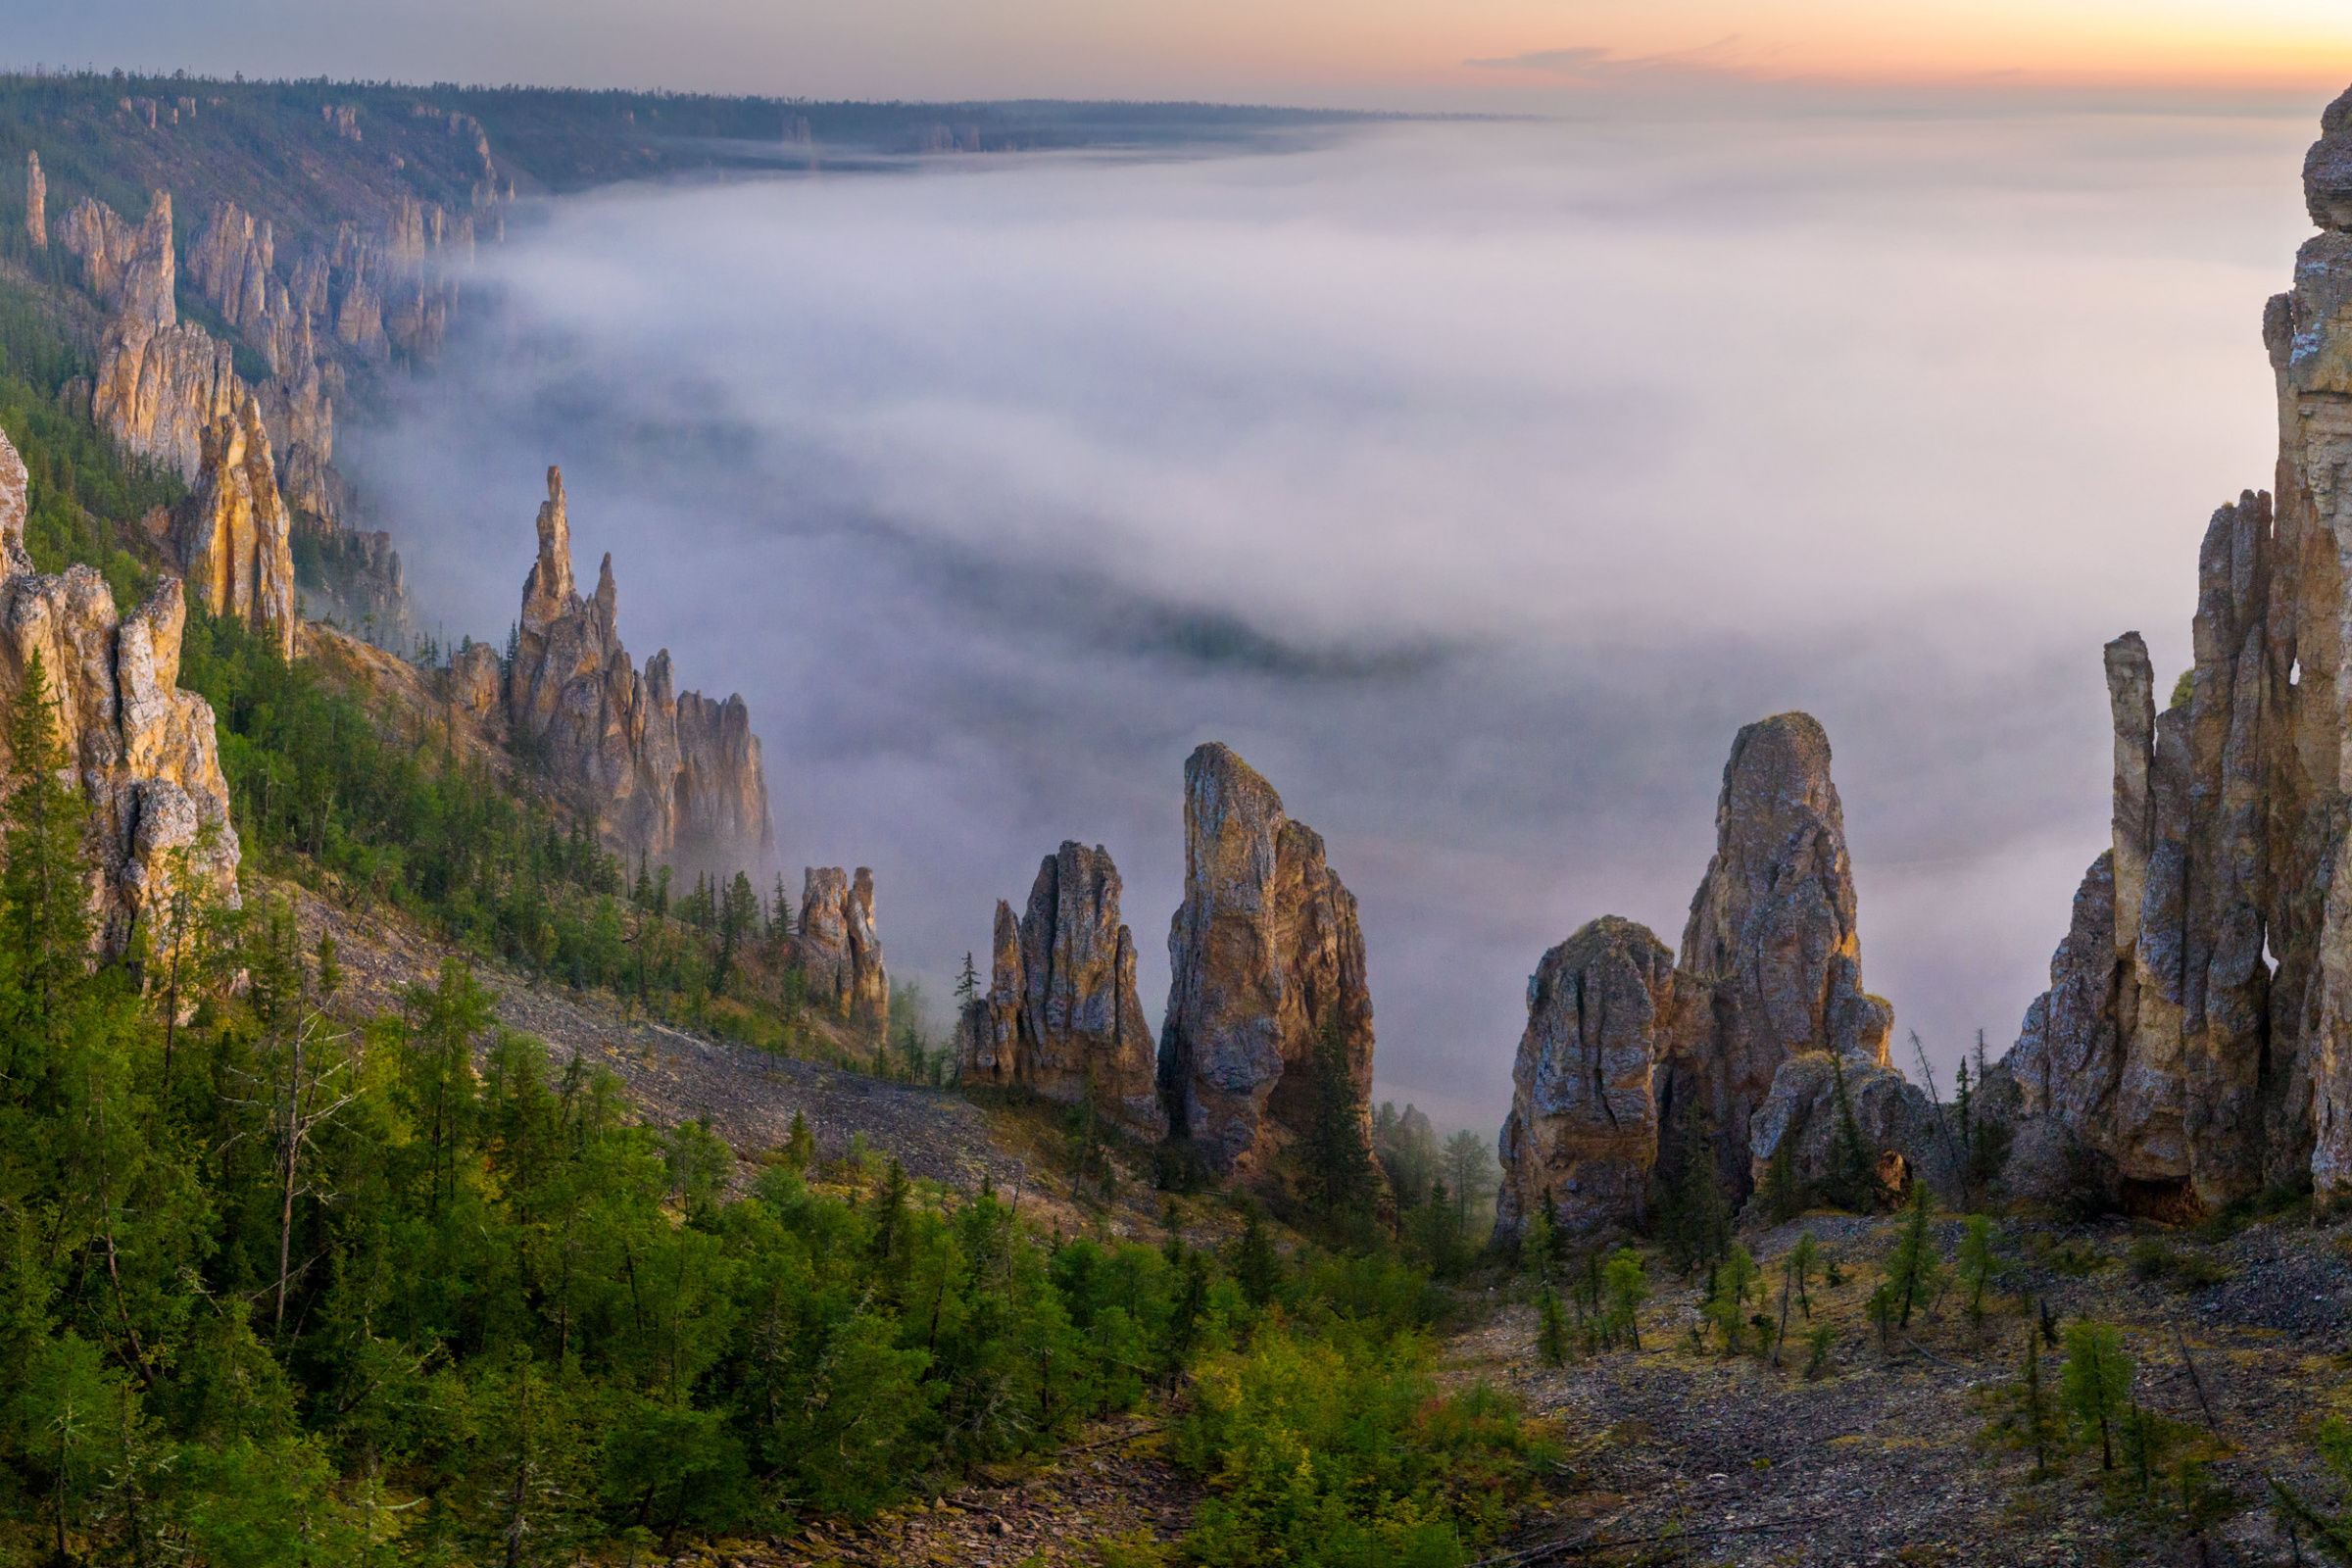 Синские столбы в тумане. Фото: Алексей Харитонов, участник фотоконкурса РГО 